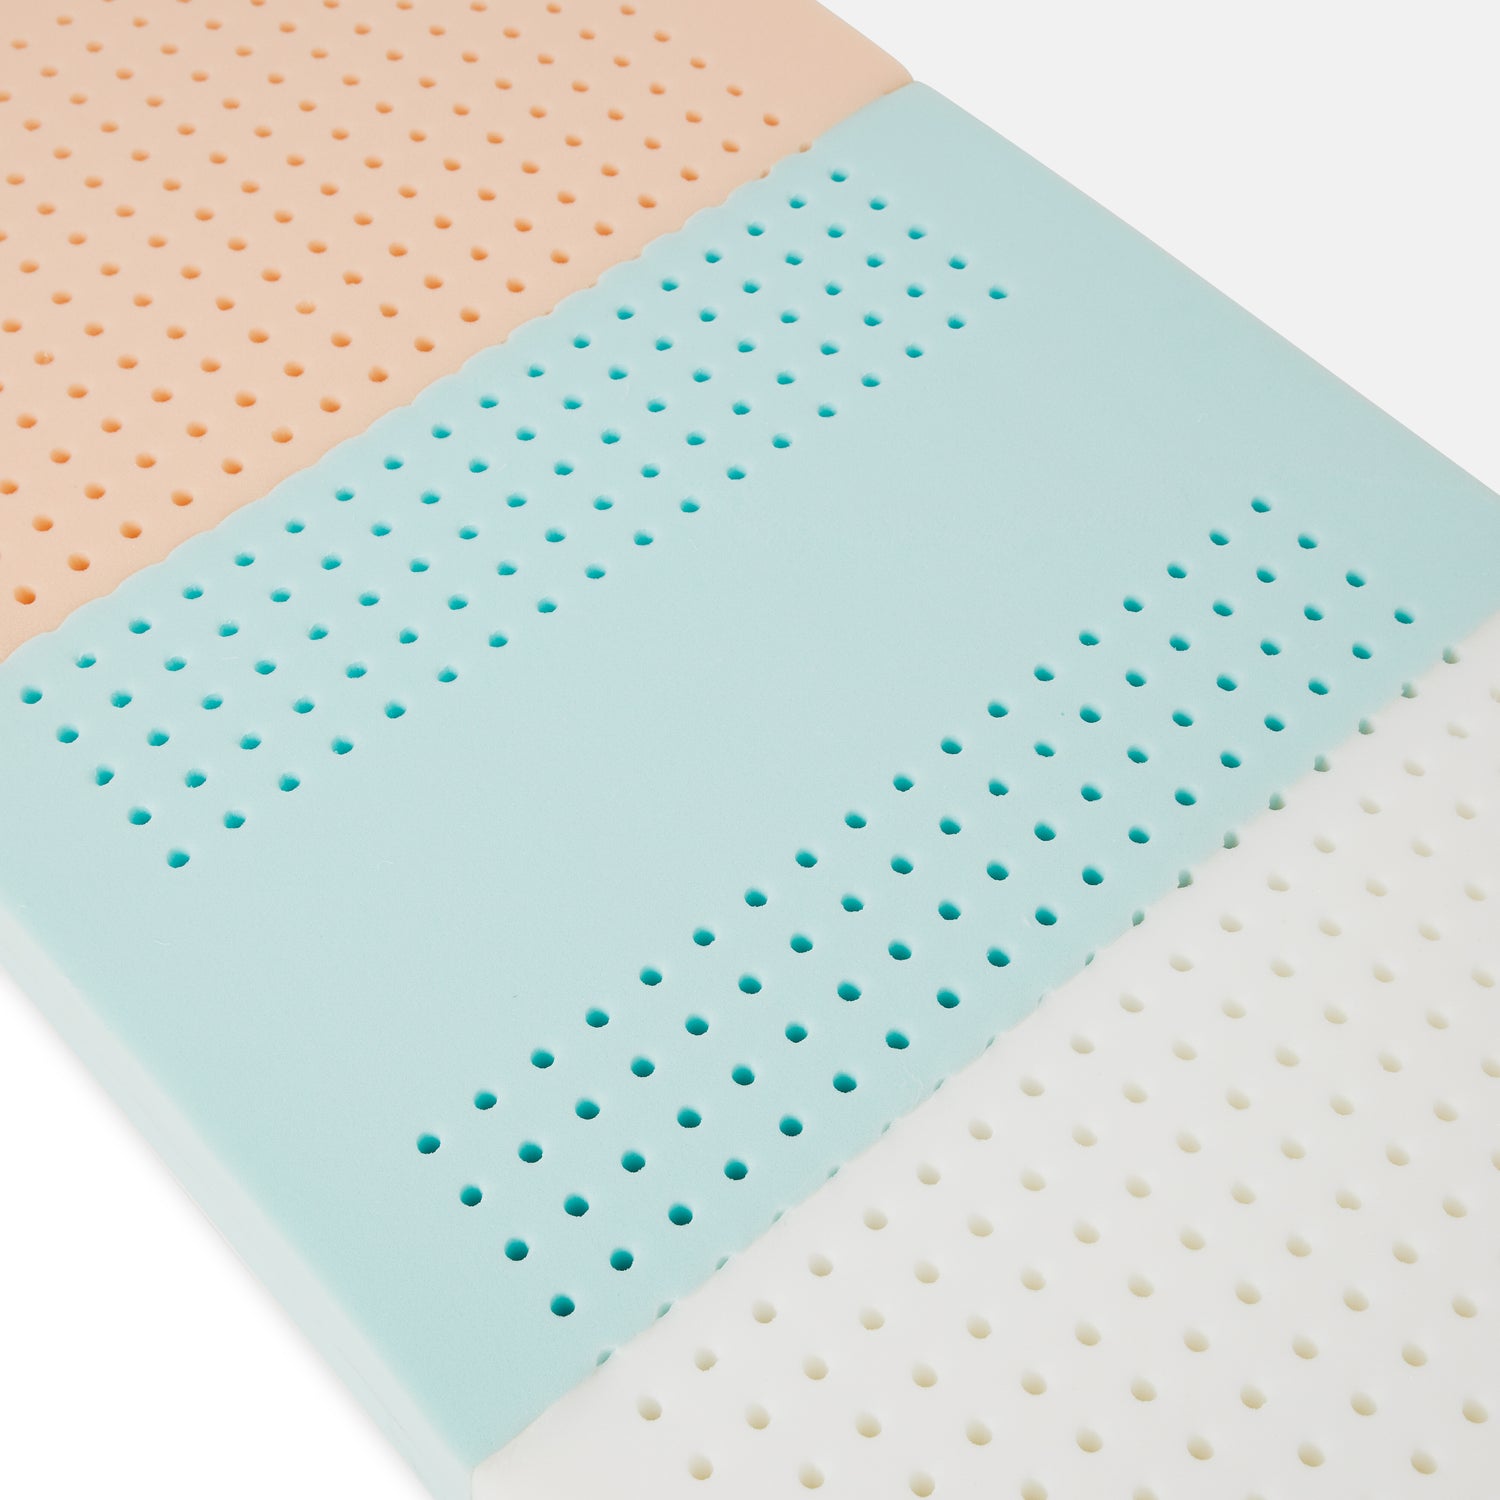 miglior materasso per bambini in schiuma ecologica adatto a lettino montessoriano